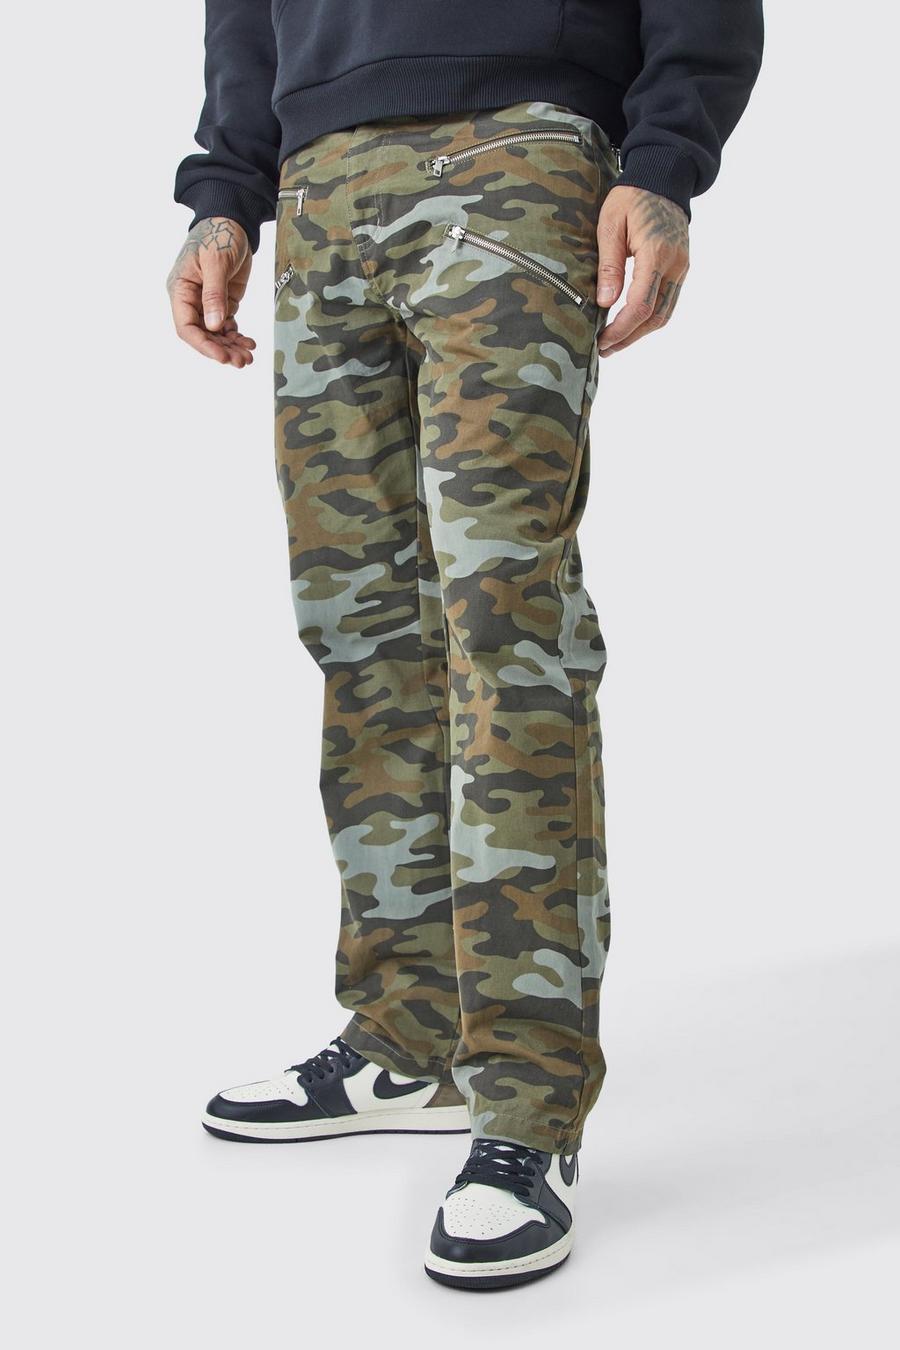 Pantaloni Tall dritti in twill in fantasia militare con inserti, zip e vita fissa, Multi